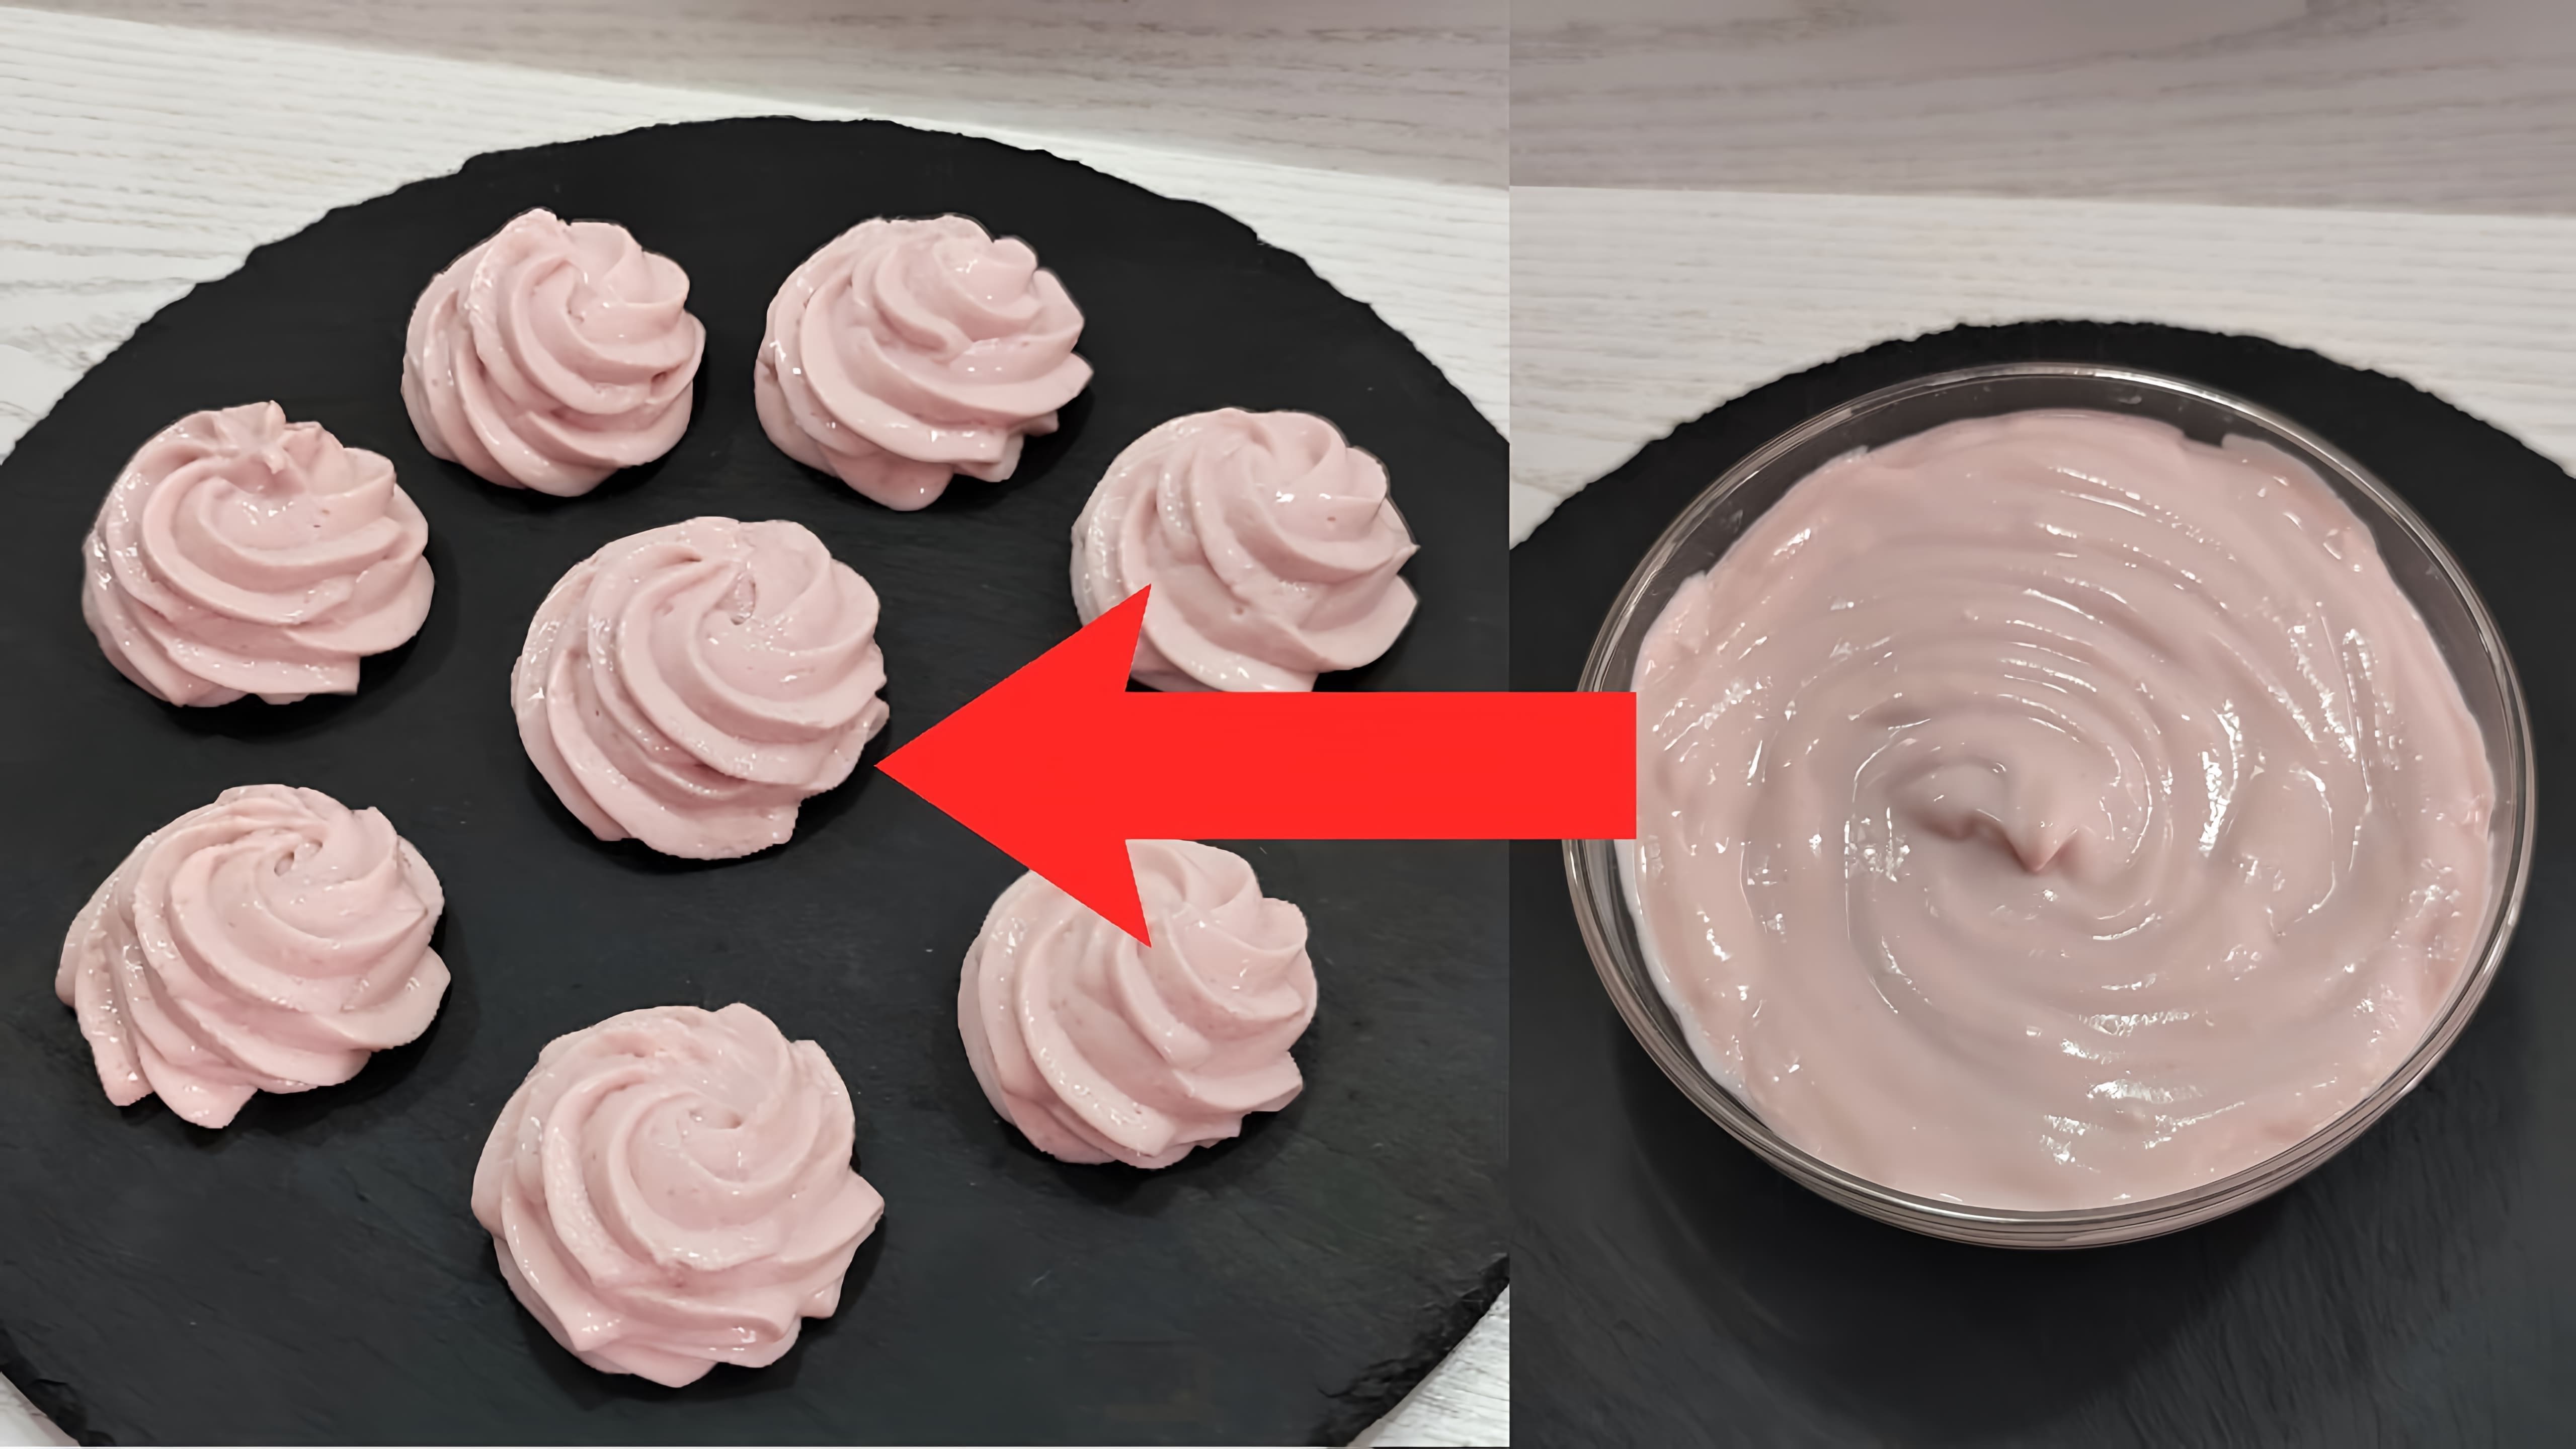 В данном видео демонстрируется рецепт приготовления йогуртового крема, который состоит всего из двух ингредиентов: желатина и йогурта